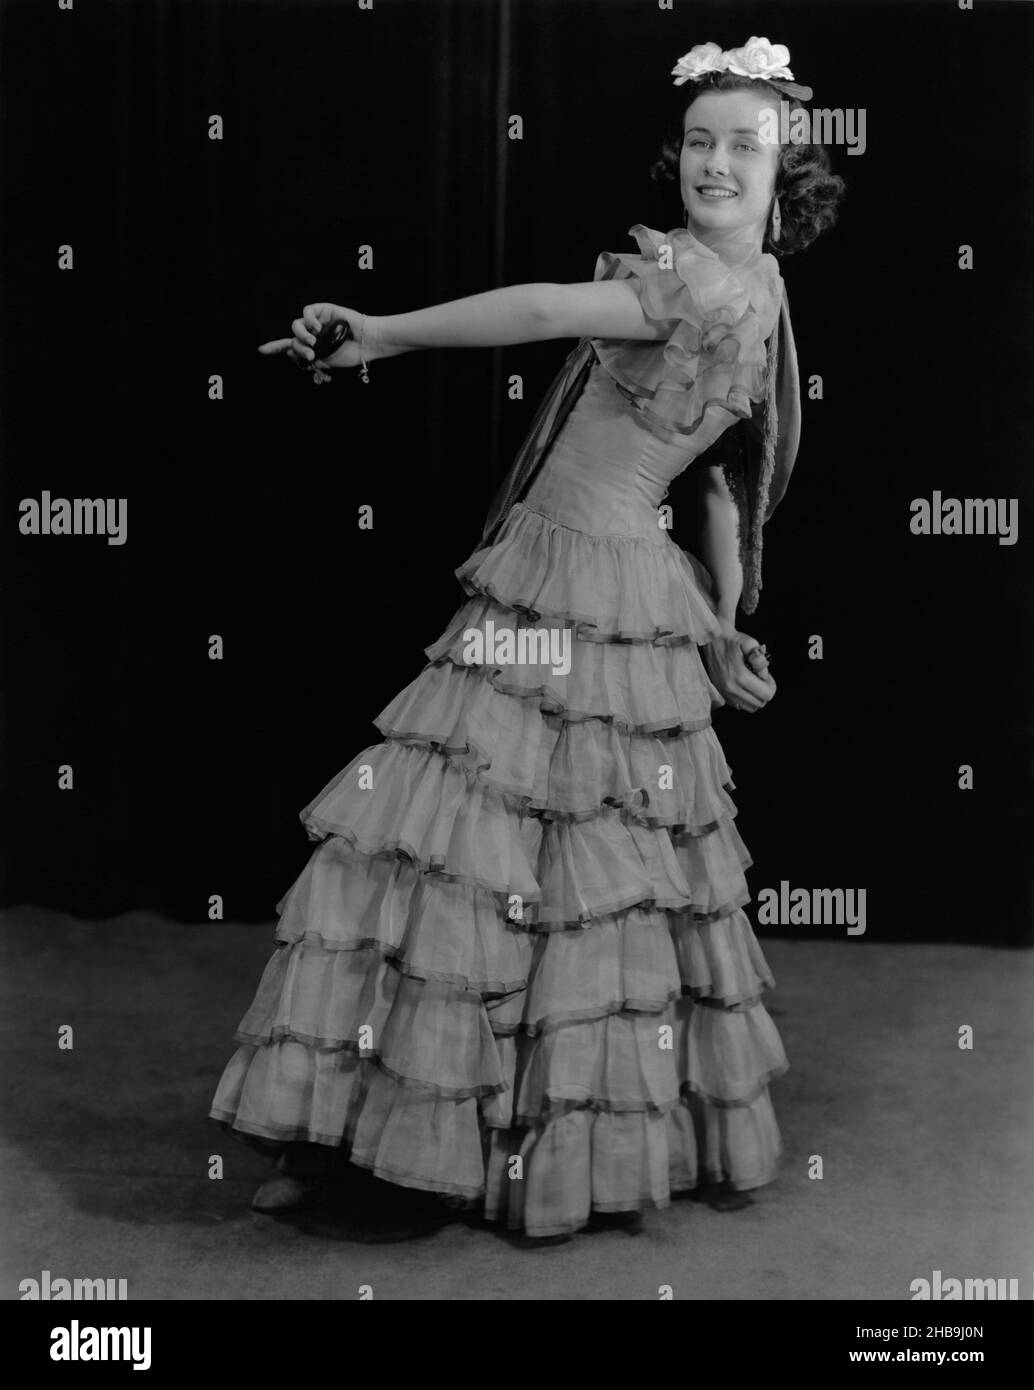 Jeune femme habillée en robe pleine longueur avec des couches de volants dansant avec des castanets.Vers 1945 Banque D'Images